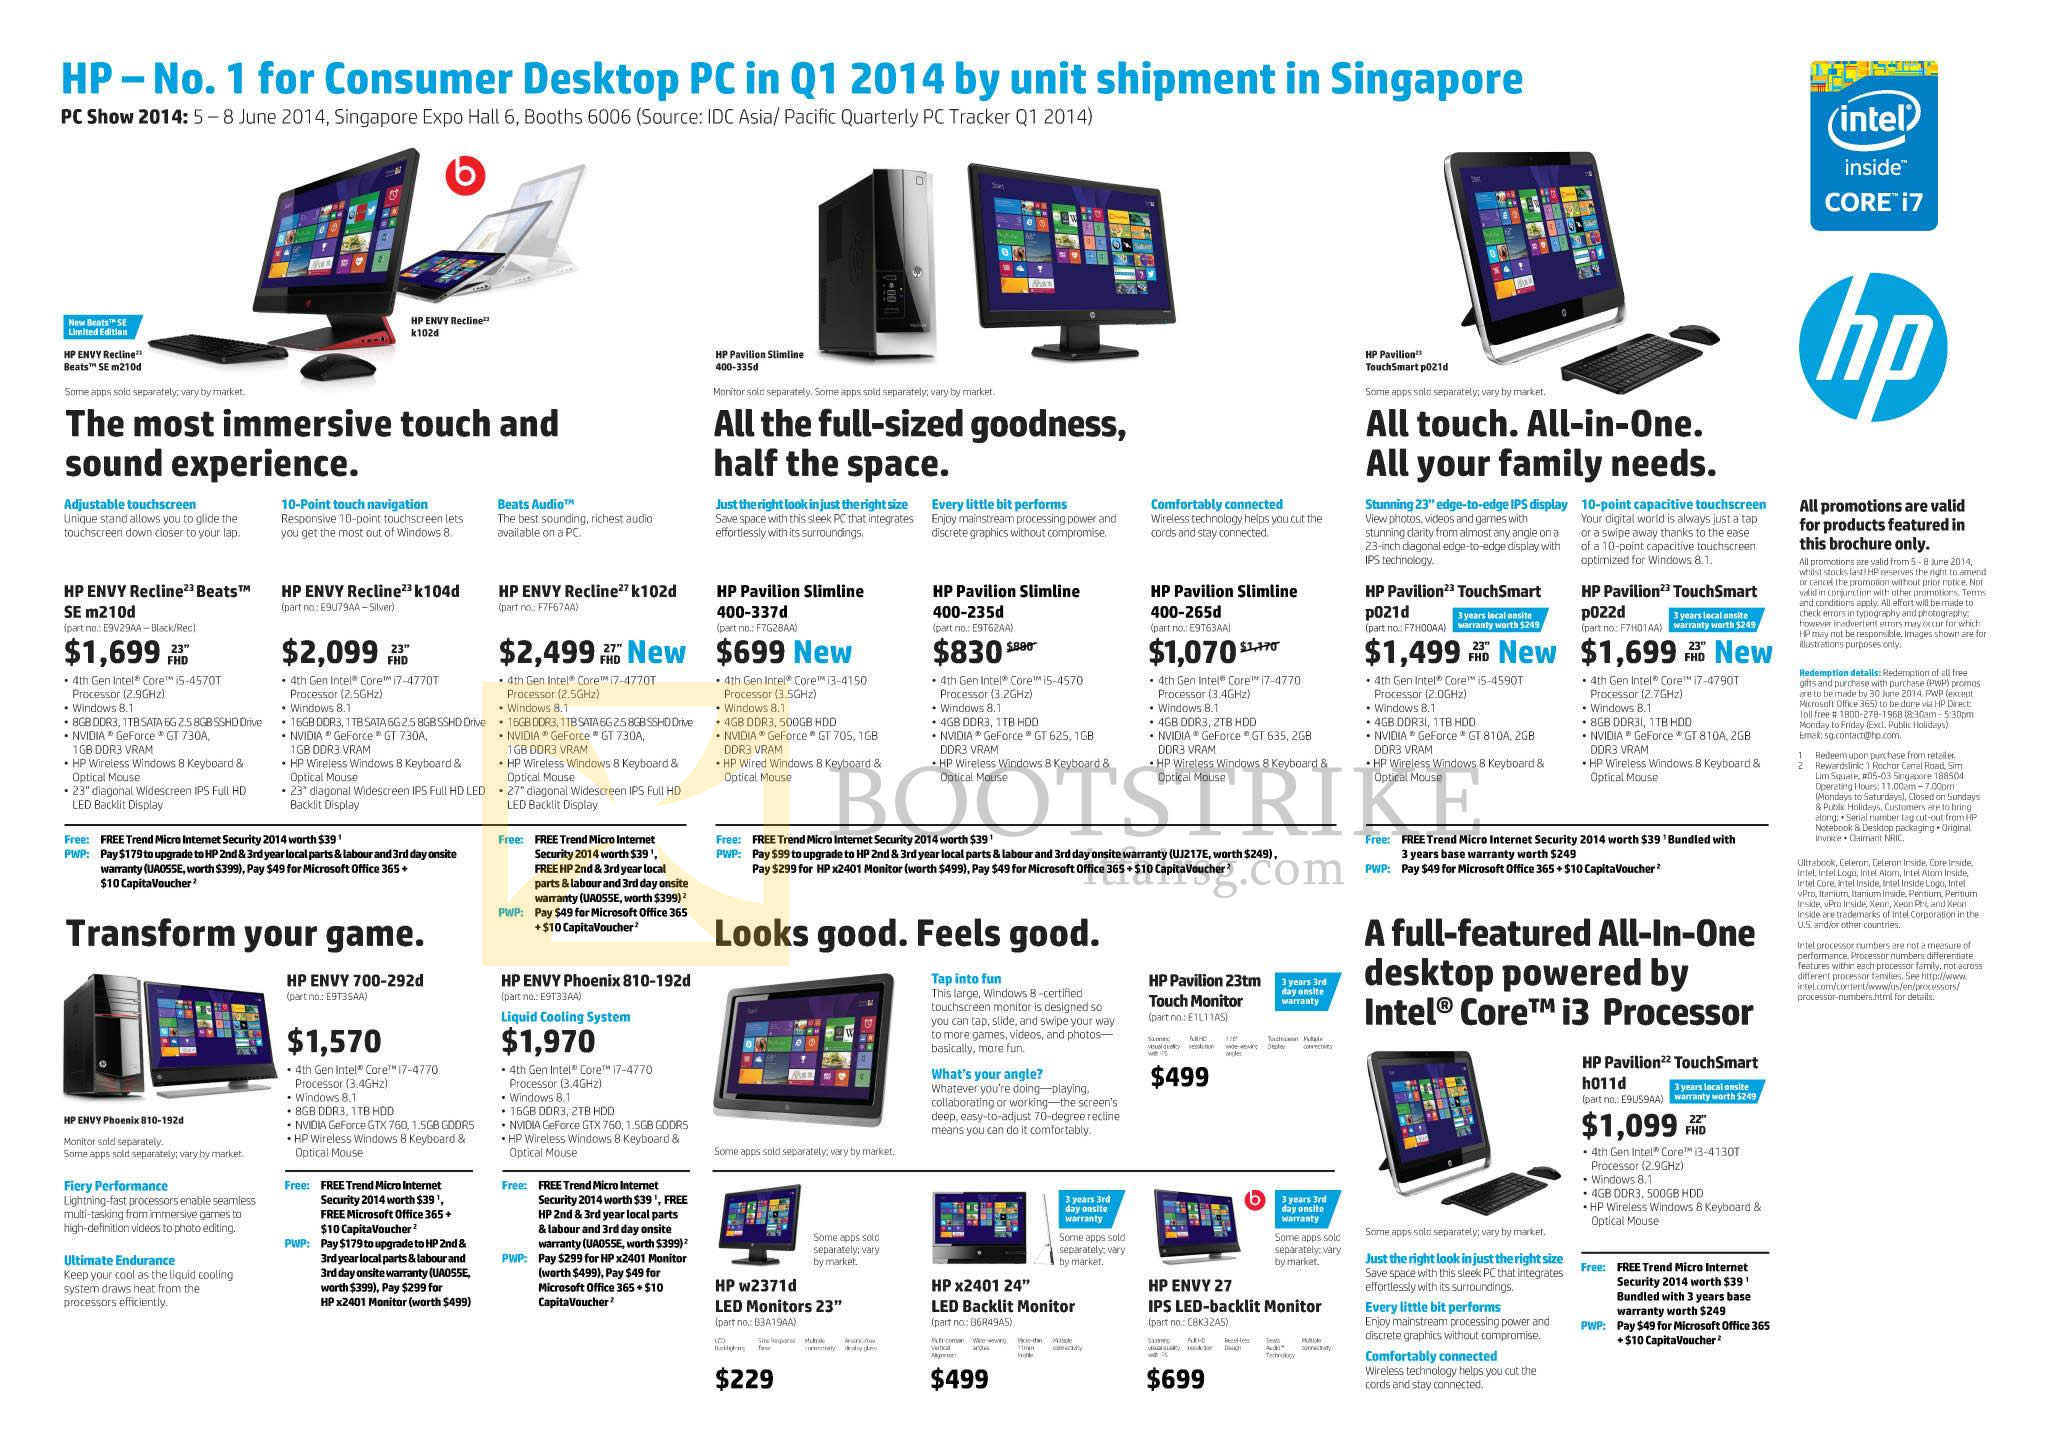 PC SHOW 2014 price list image brochure of HP Desktop PCs, AIOs, Monitors, Envy Recline K014d, K102d, Pavilion Slimline 400-337d, 400-235d, 400-265d, TouchSmart P021d, P022d, H011d, Envy 27, X2401, 700-292d, 810-192d